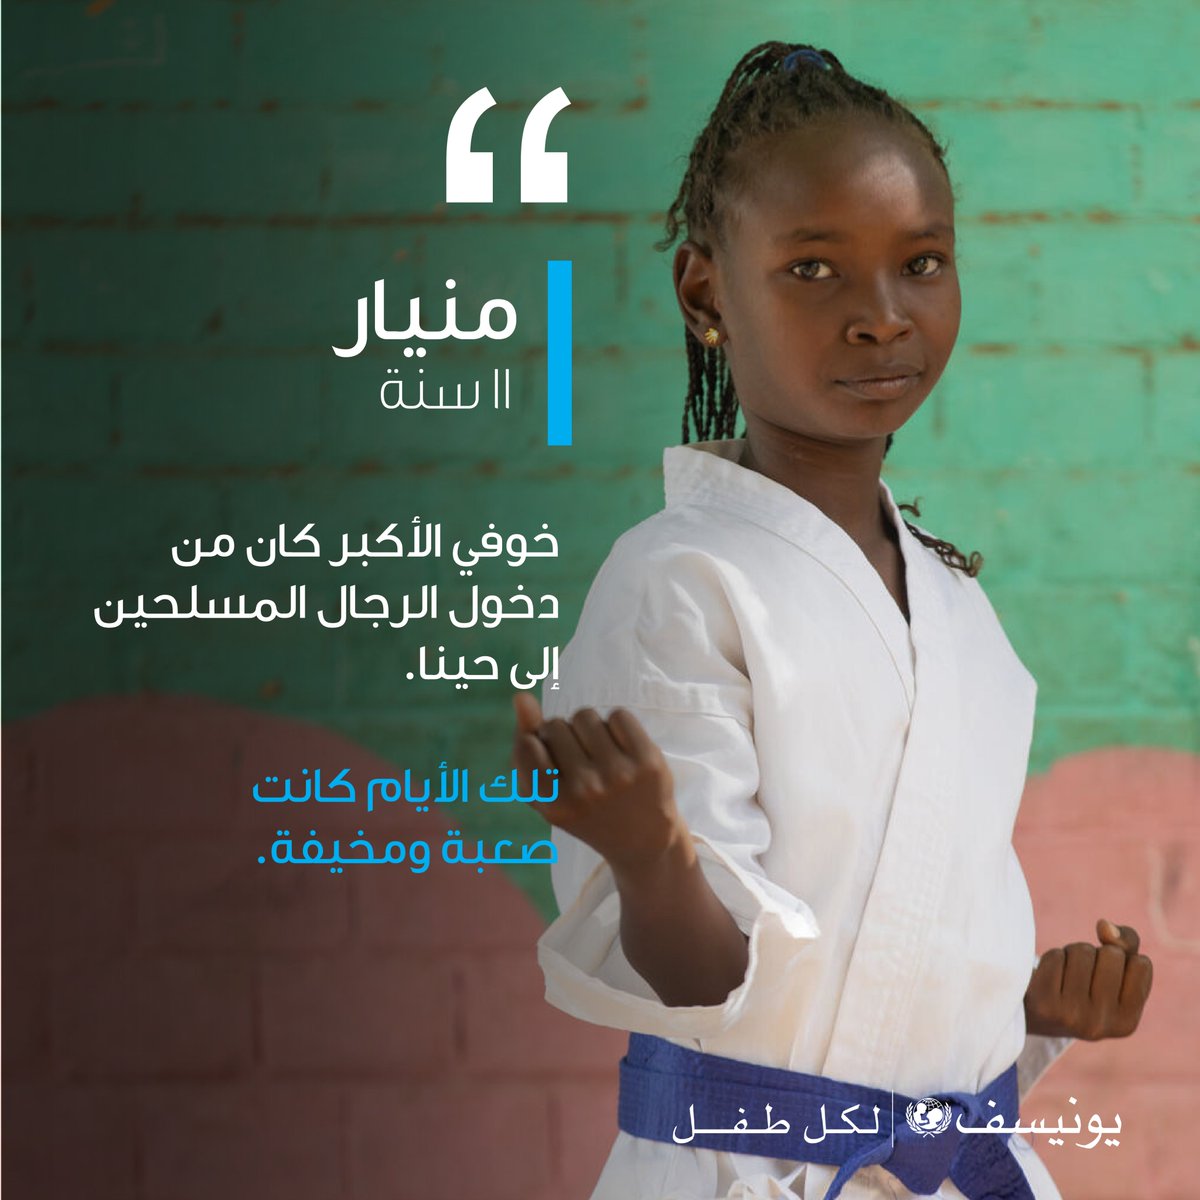 الحرب في السودان أجبرت الأطفال في #السودان على العيش في خوف وعنف وعدم يقين. 

لجميع #الأطفال الحق في أن يشعروا بالأمان بغض النظر عن مكان وجودهم. 

#الطفل_هو_طفل